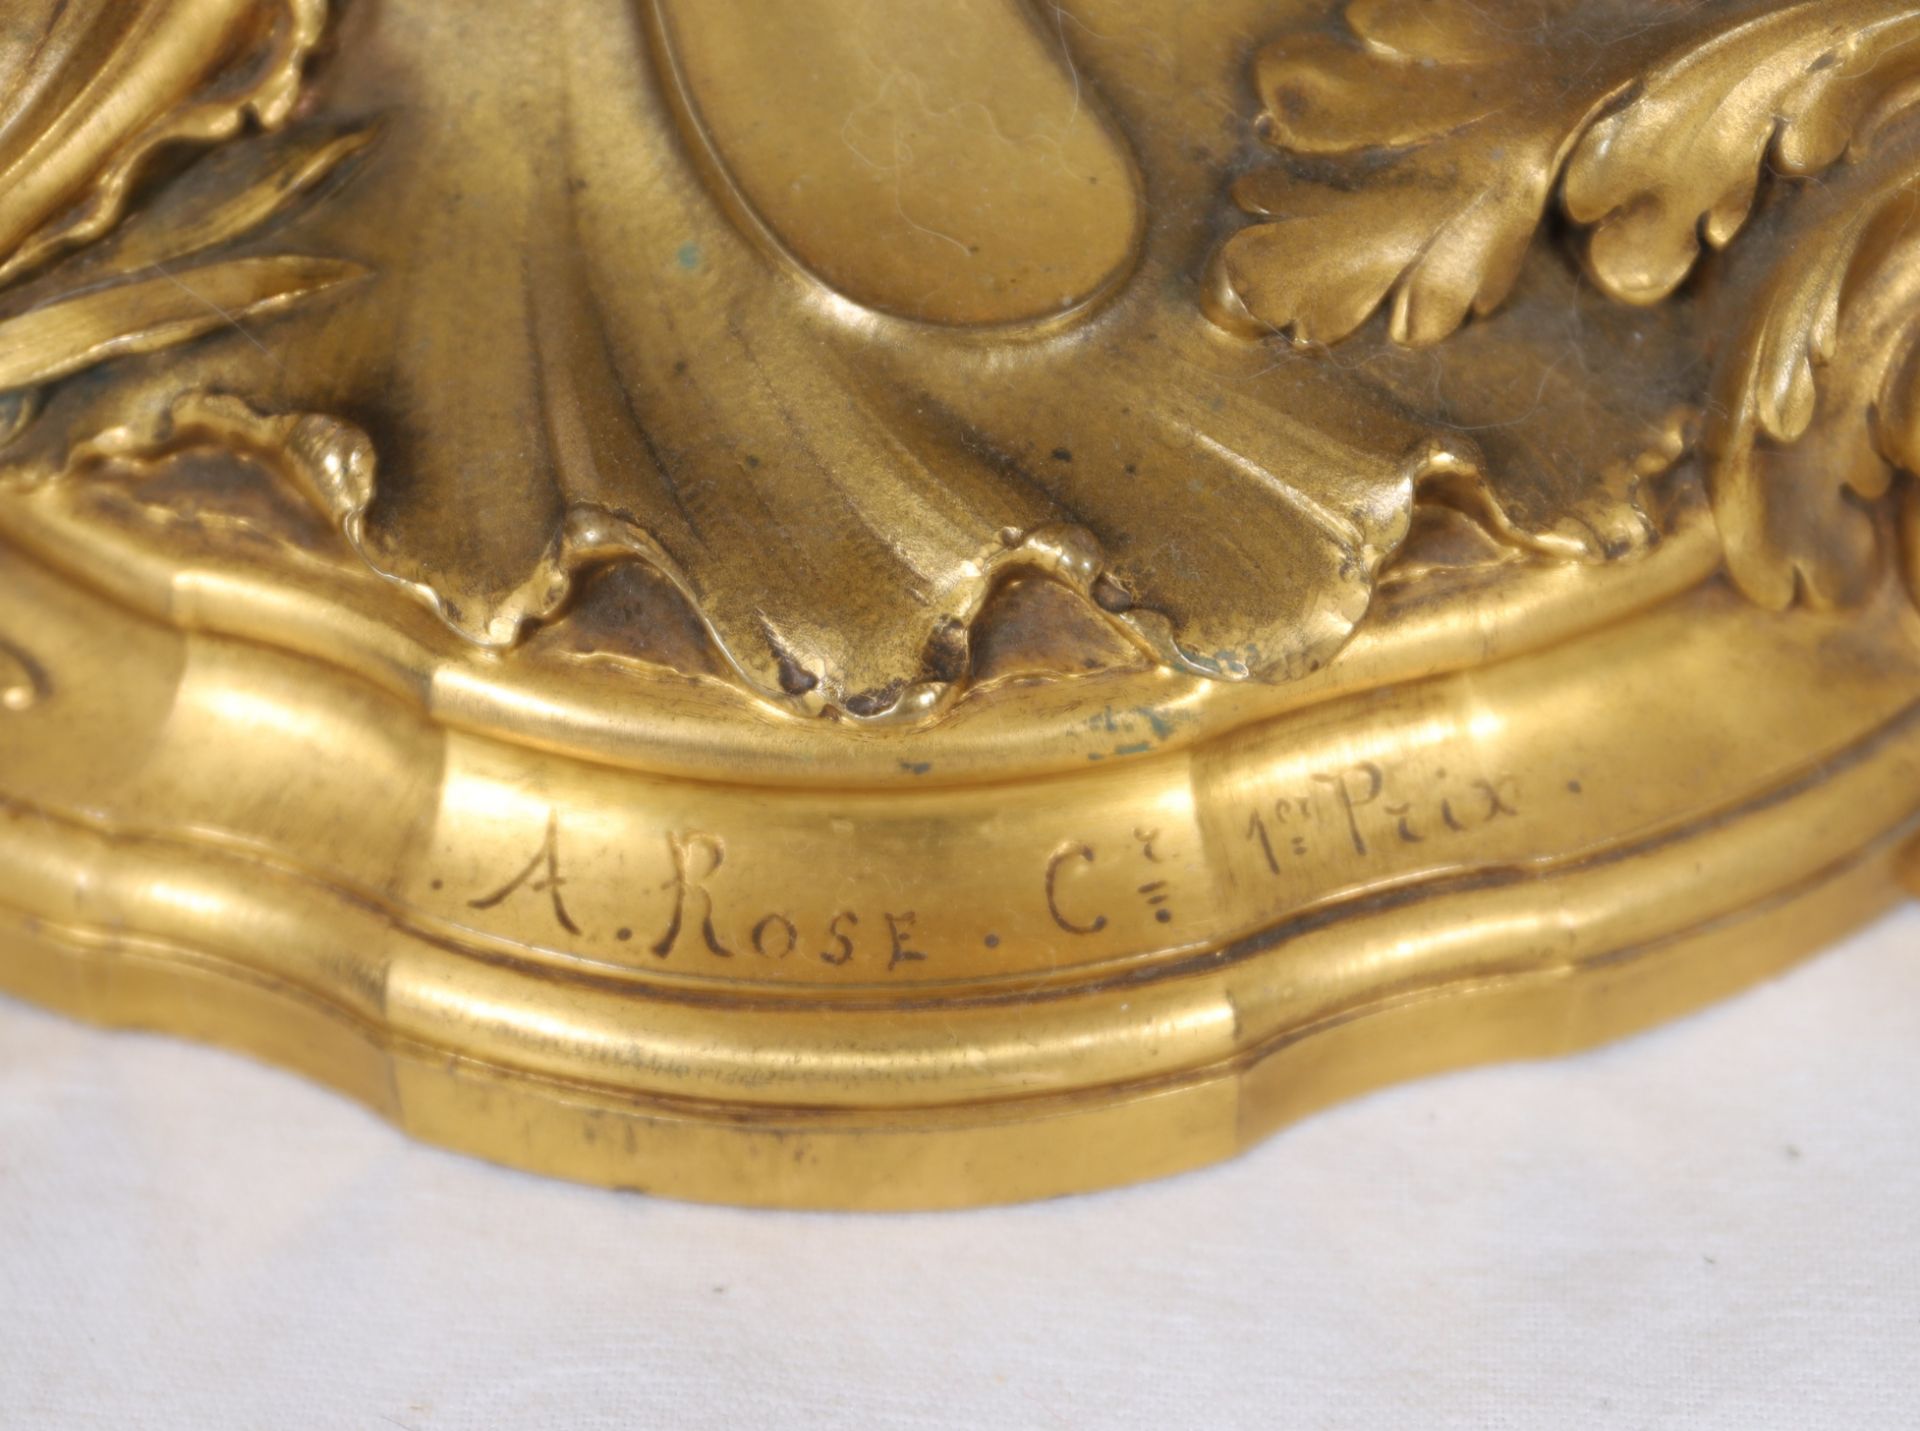 IMPORTANTE LAMPE EN BRONZE DORE ROCAILLE 1900 DE A. ROSE En bronze doré et richement [...] - Bild 3 aus 3